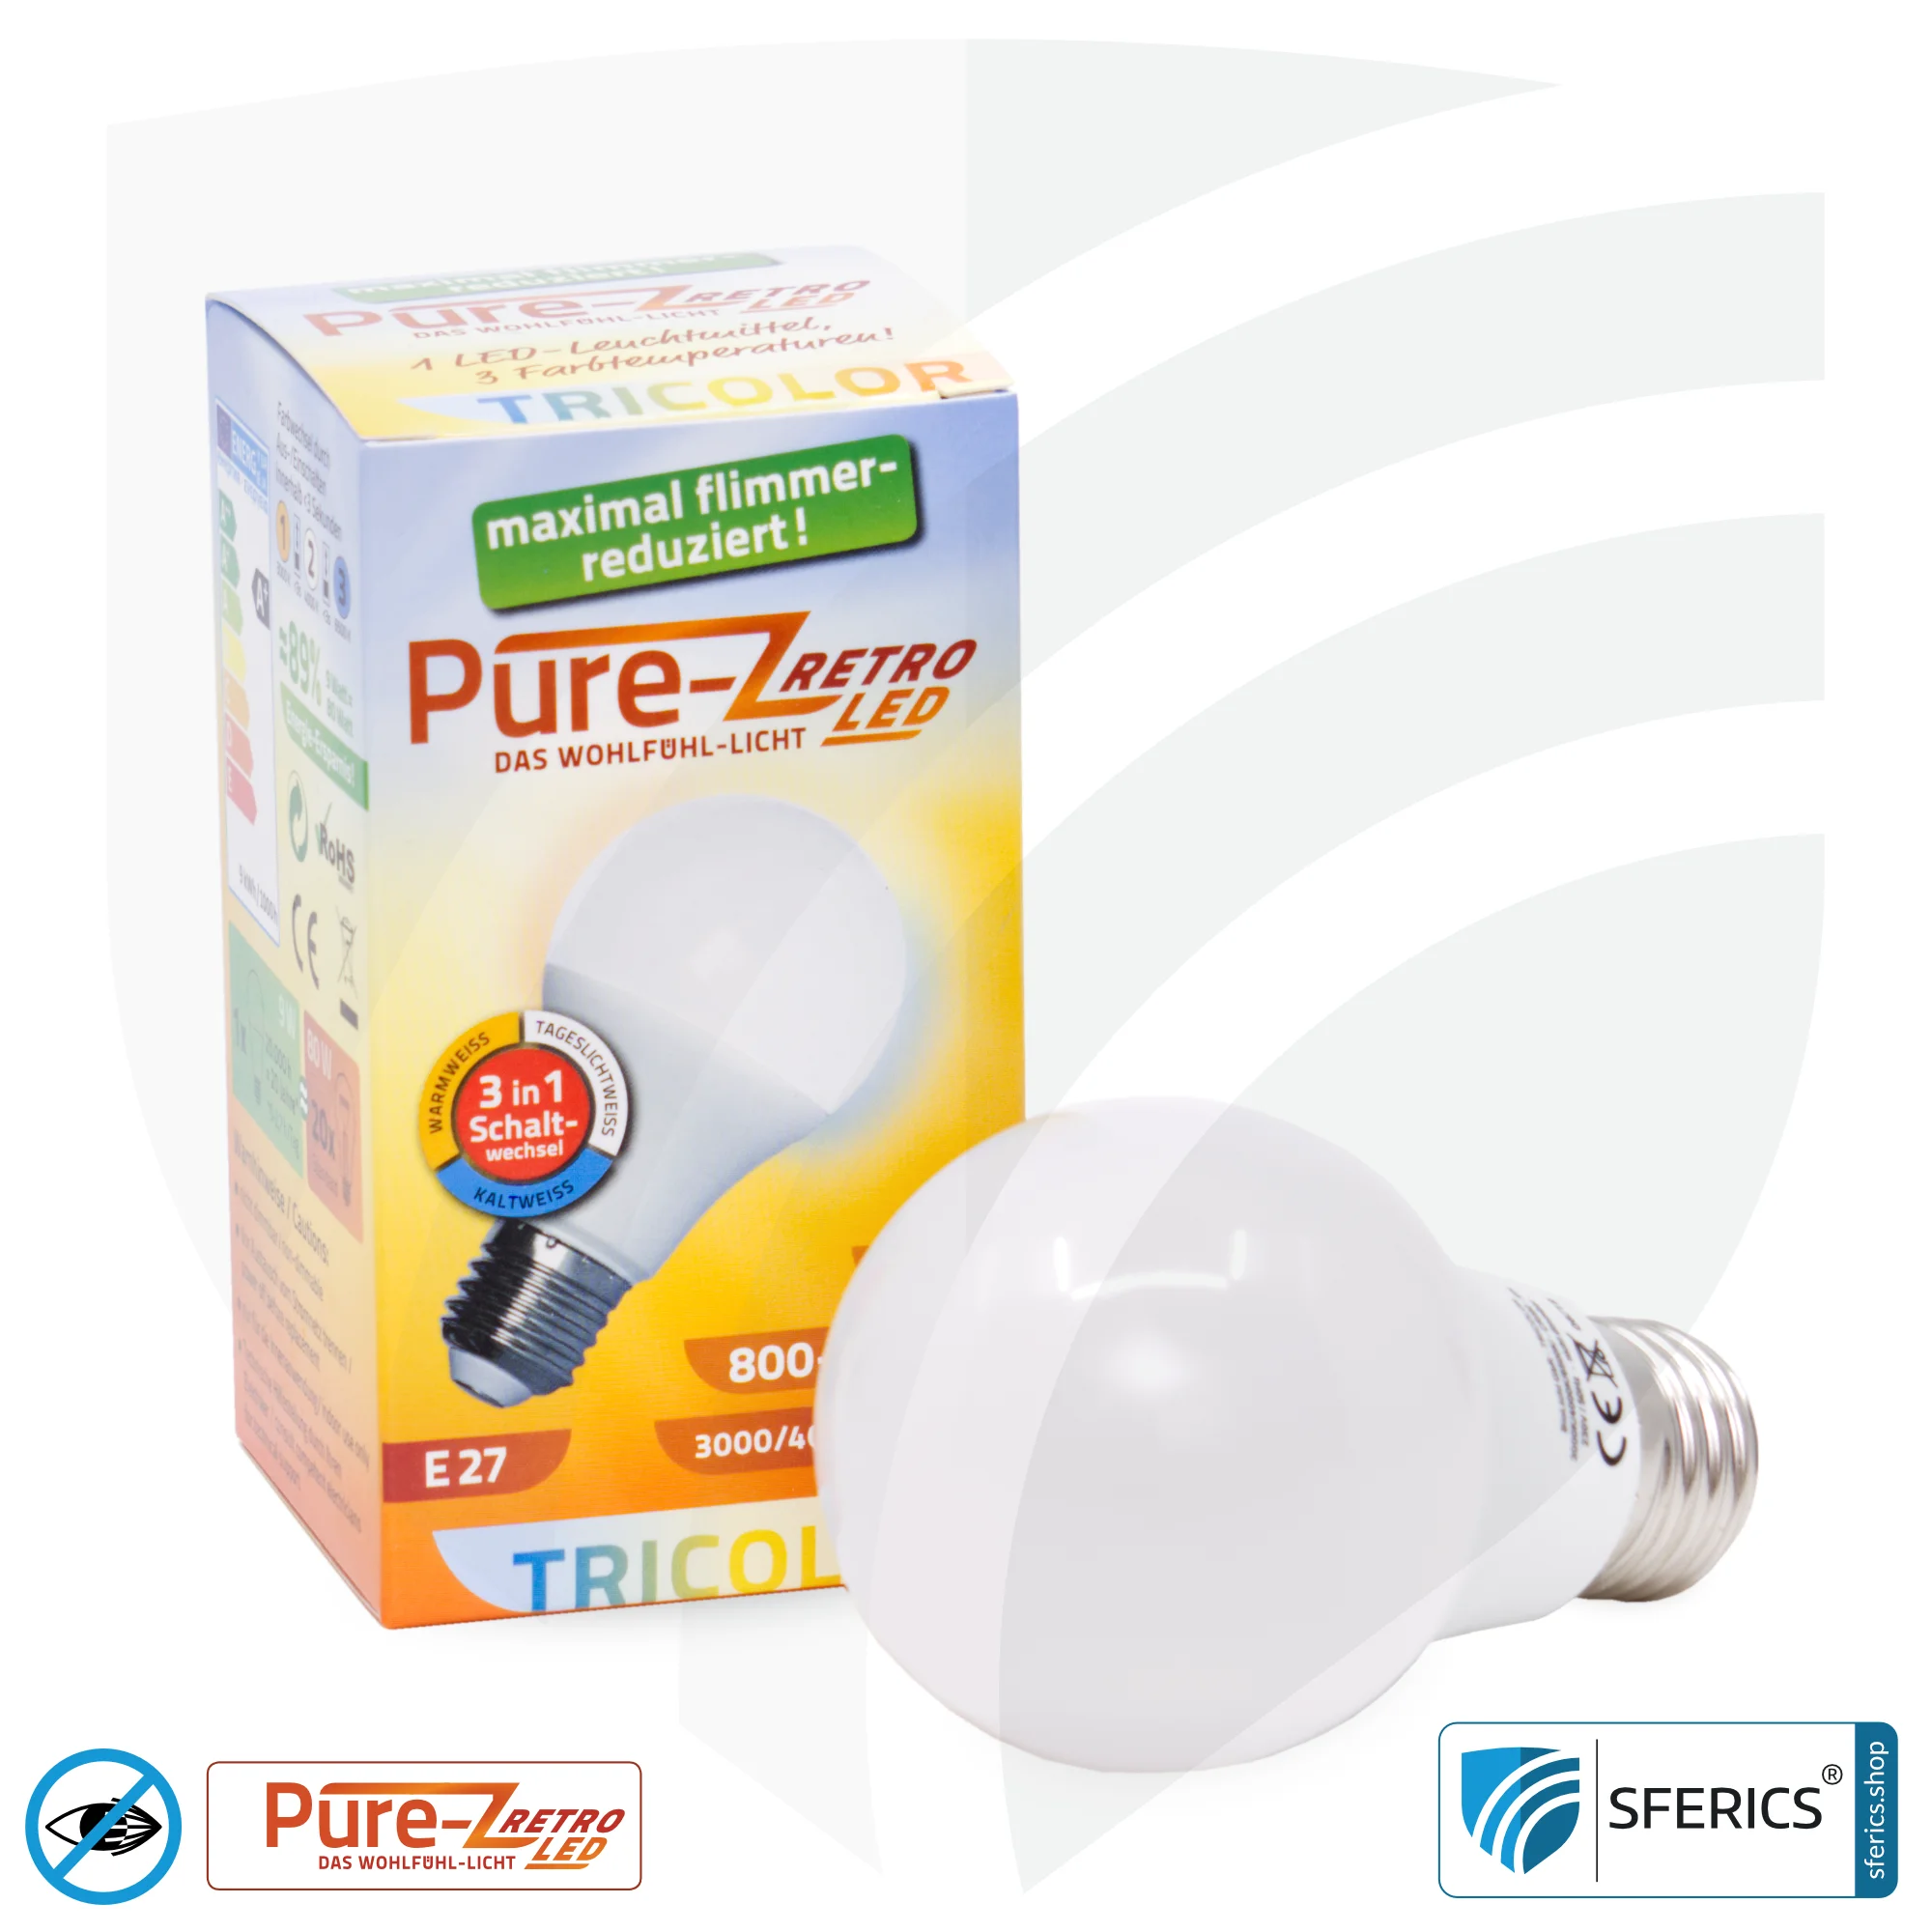 9 Watt LED TRICOLOR Pure-Z Retro | 3in1 = 3 umschaltbare Lichtfarben | Hell wie 80 Watt, 850 Lumen | CRI >90 | flimmerfrei | E27